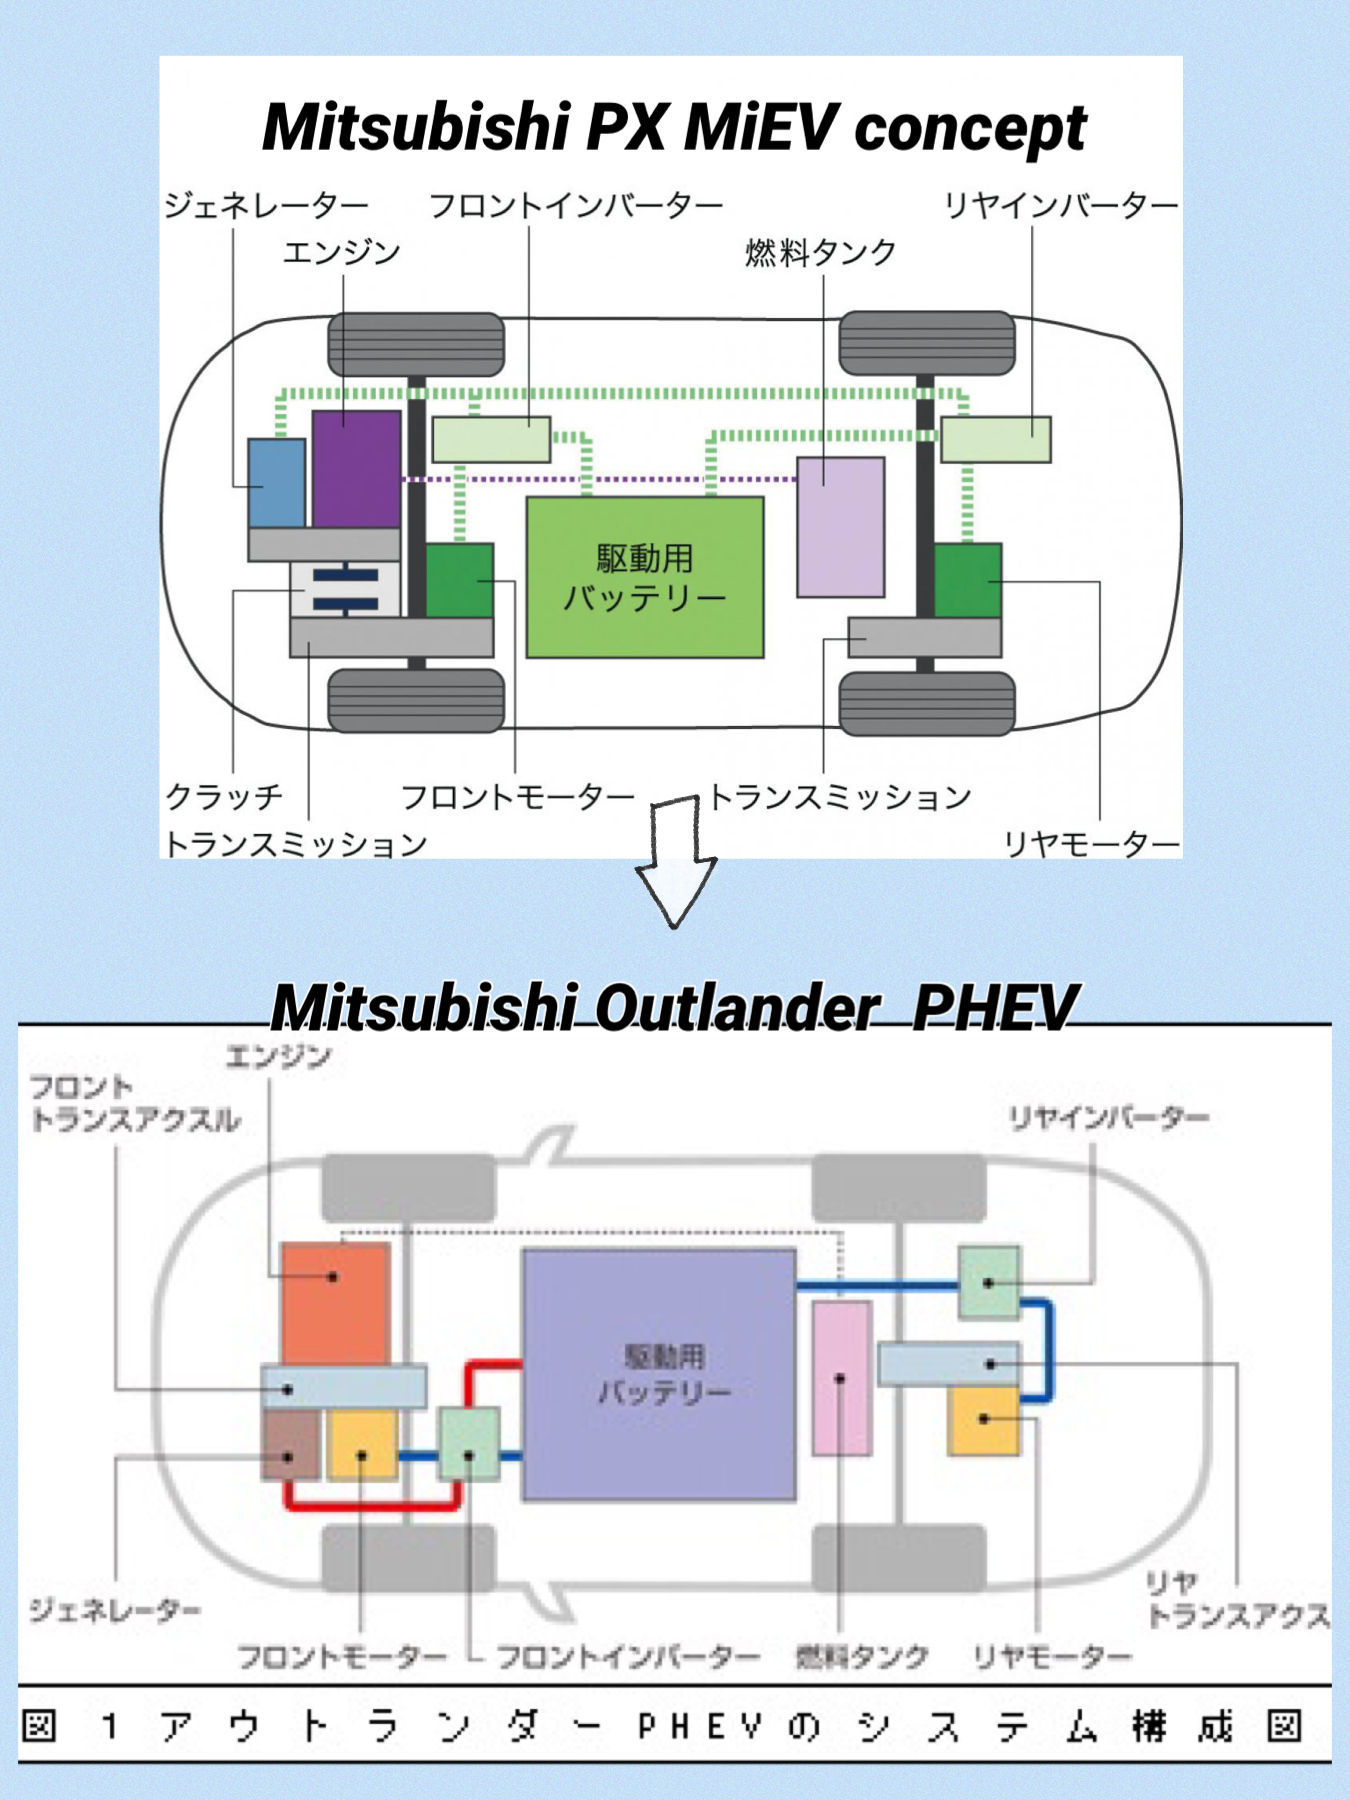 三菱アウトランダーPHEVの原点三菱PX MiEV concept パワートレインシステム